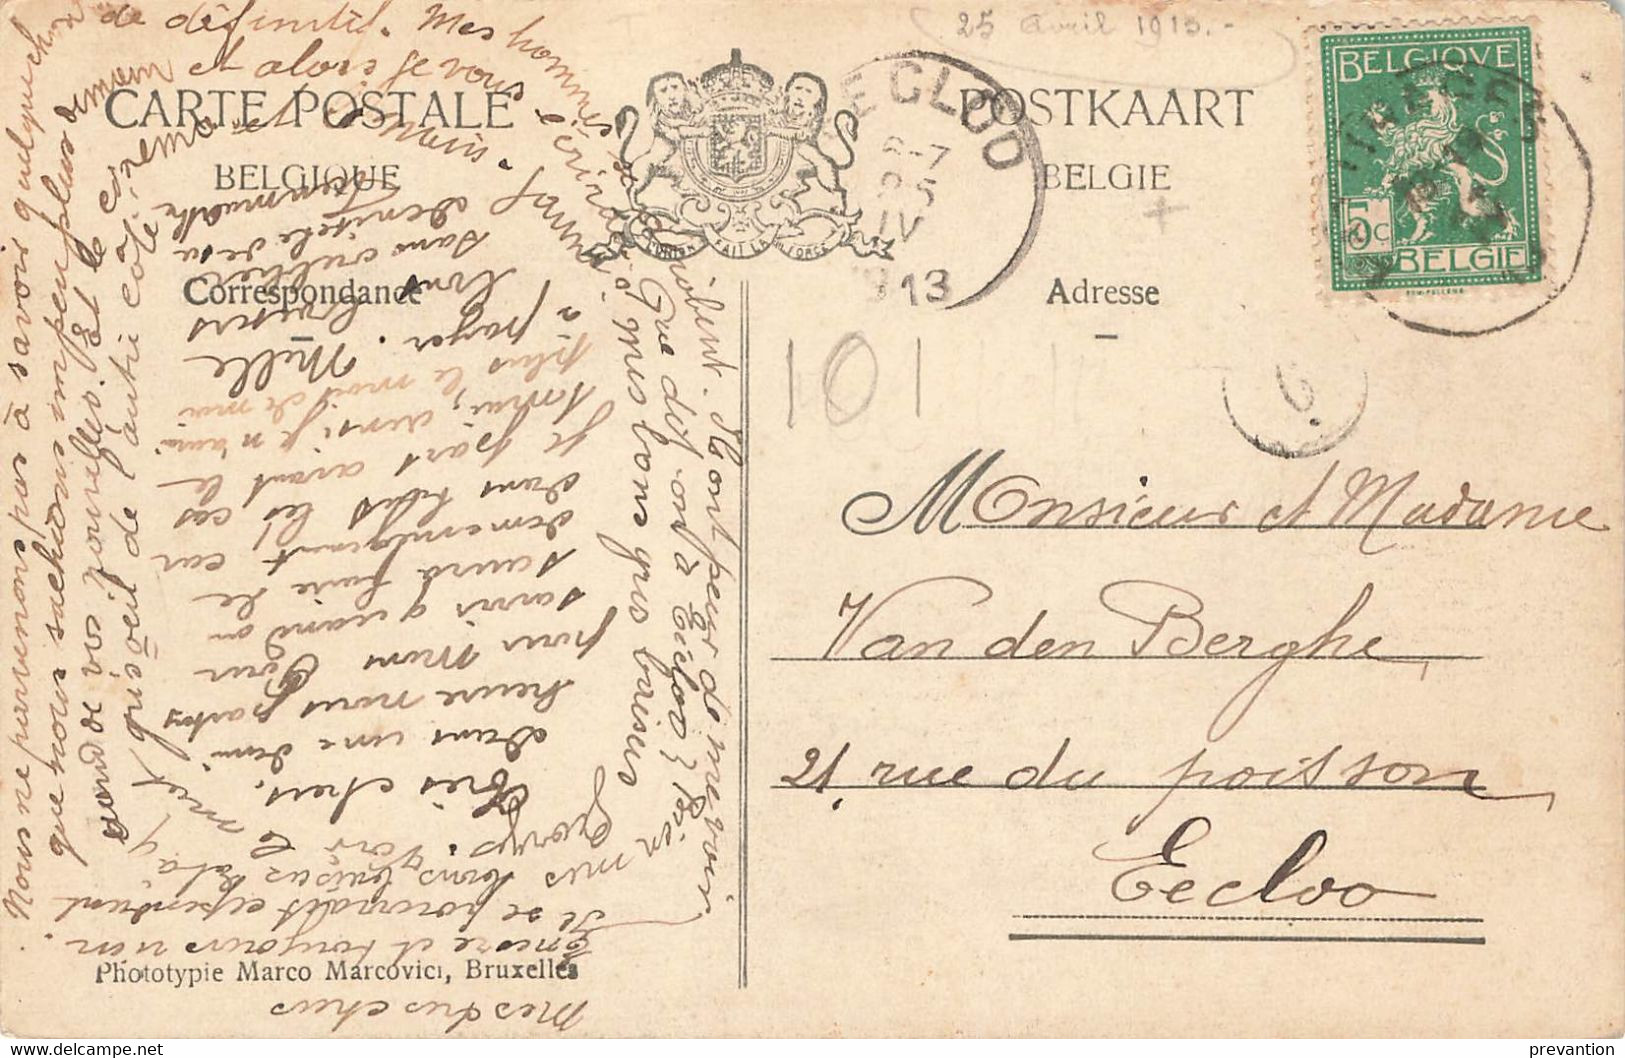 PATURAGES - Le Fond De Grisoeuil - Carte Colorée Et Circulé En 1913 Vers Eecloo - Colfontaine